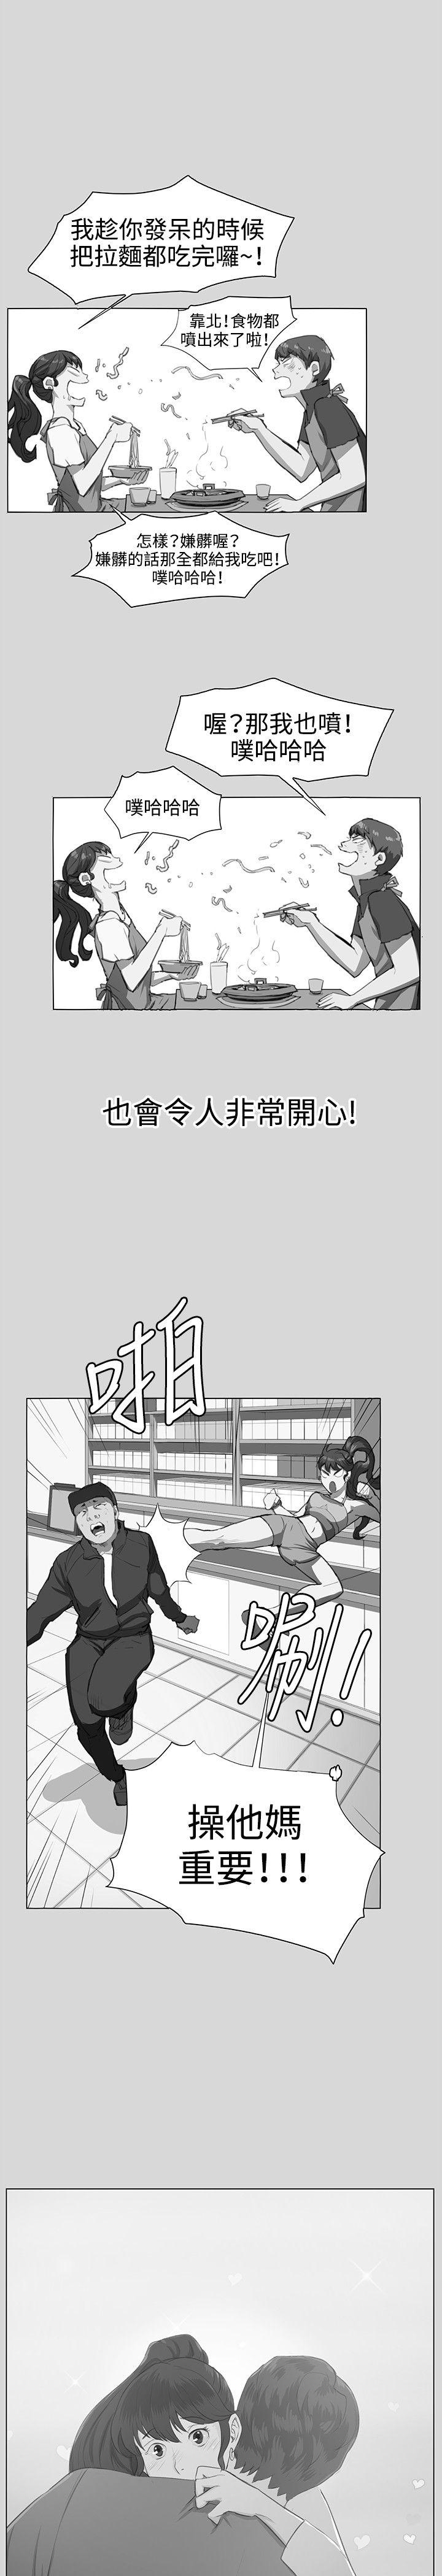 韩国污漫画 深夜便利店 最终话 24